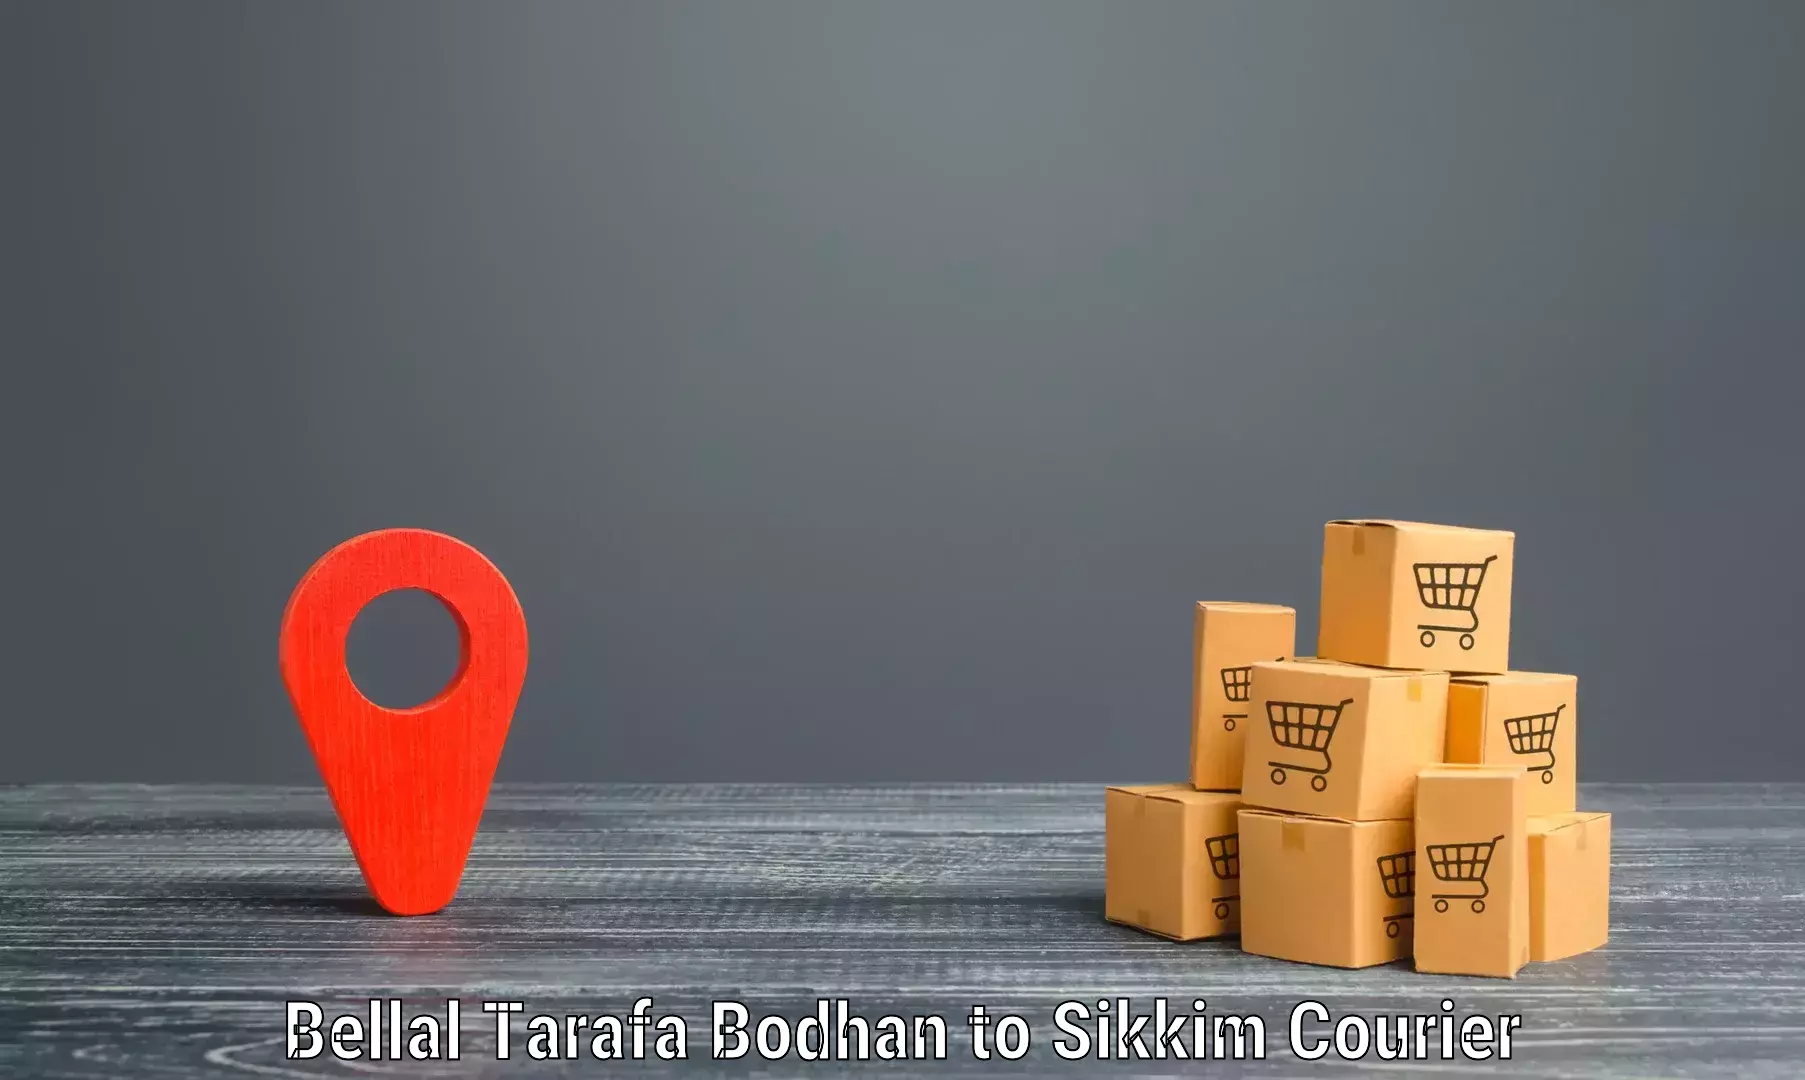 Professional courier handling Bellal Tarafa Bodhan to NIT Sikkim